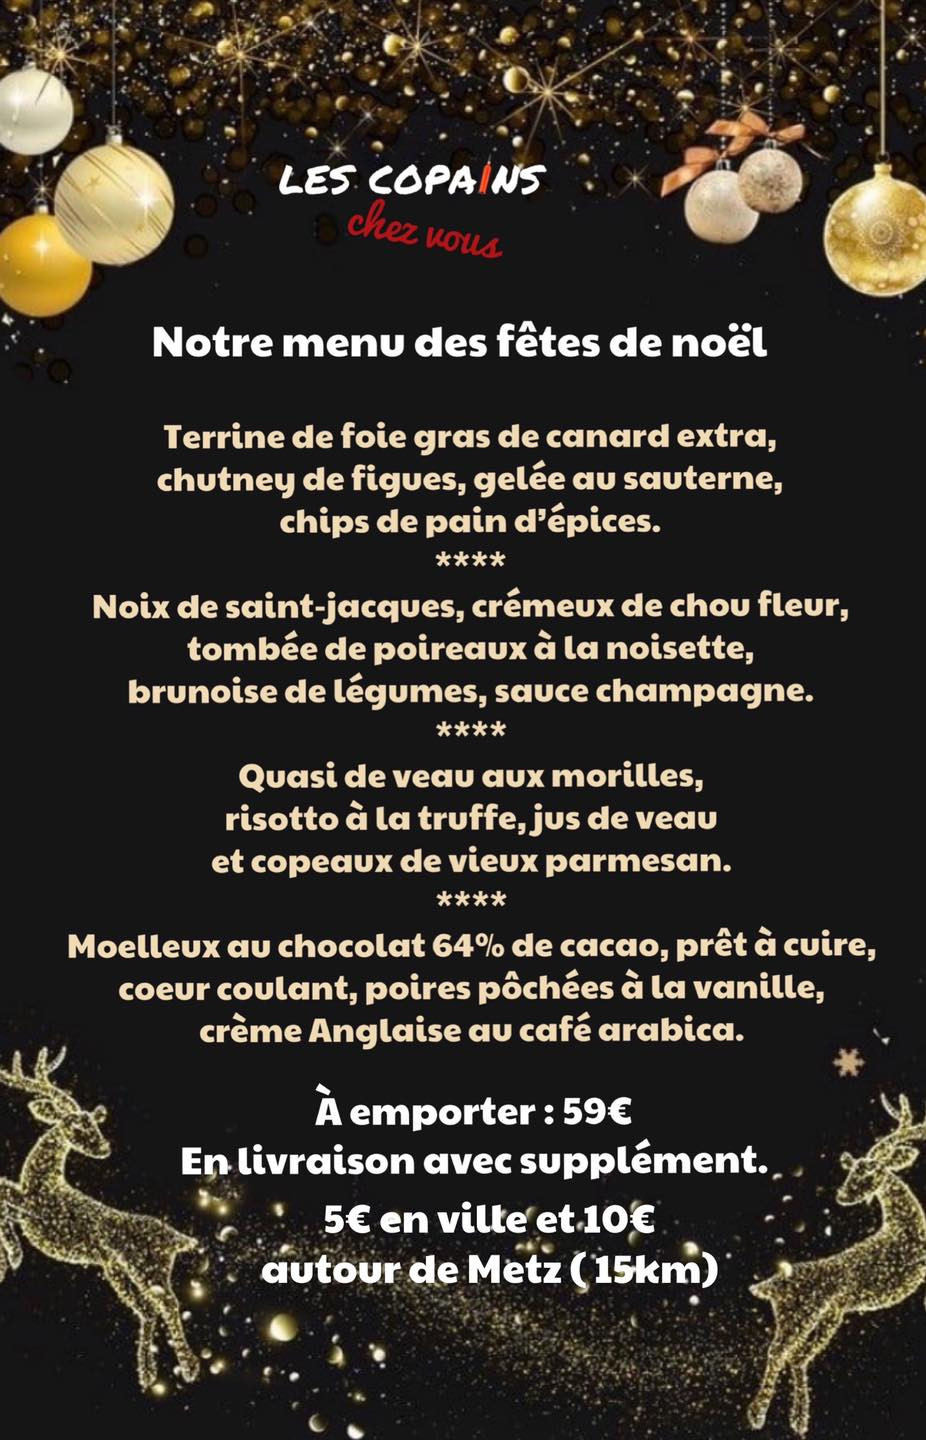 Carte et menu de Noël 2020 du restaurant Les Copains d’abord, à Metz.  DR